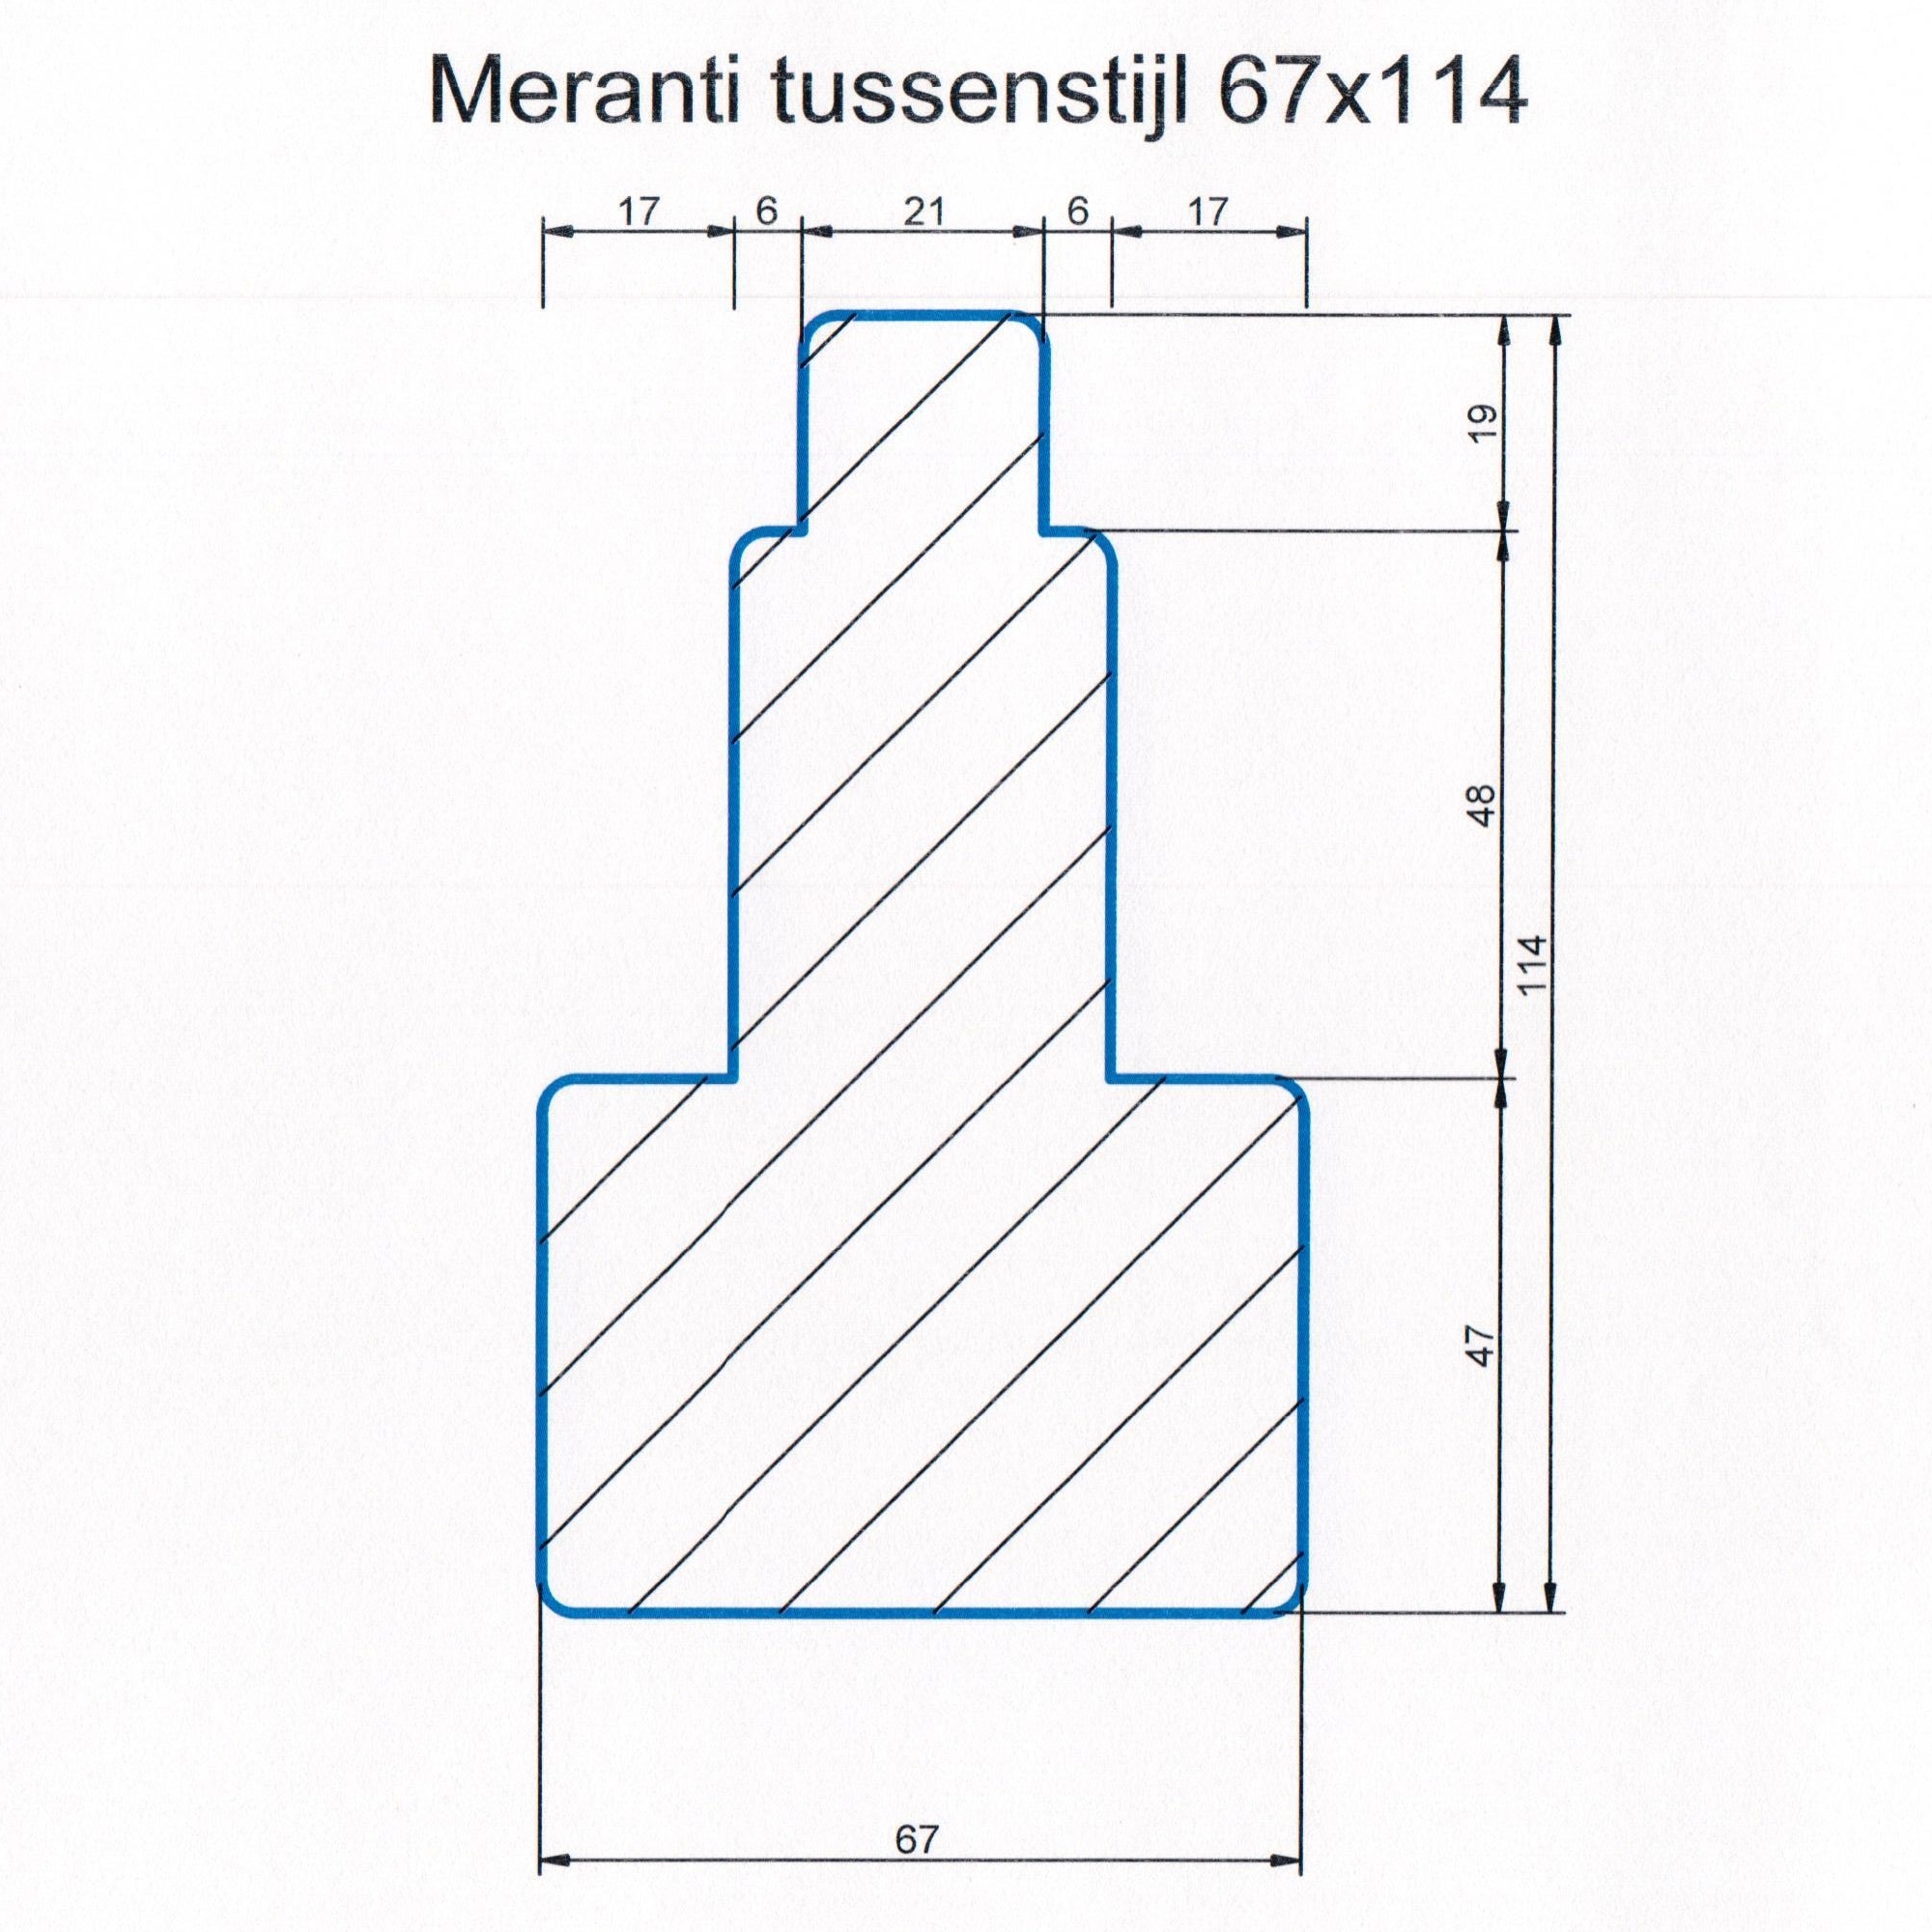 Meranti 67x114 kozijnhout Tussenstijl L=1200 mm